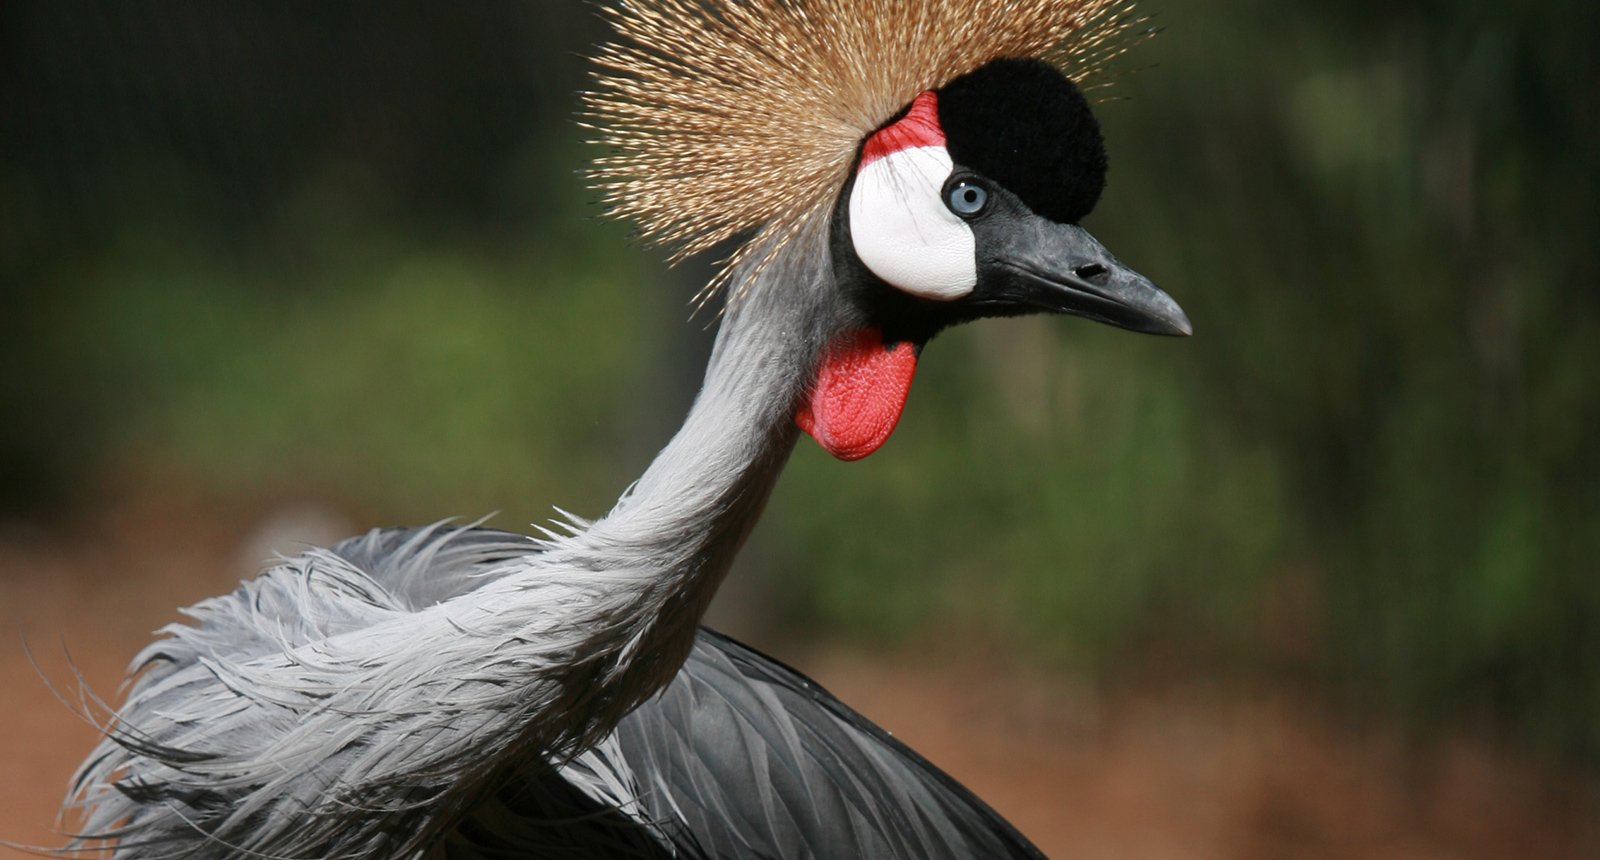 East African Grey Crowned Crane - Balearica regulorum gibbericeps